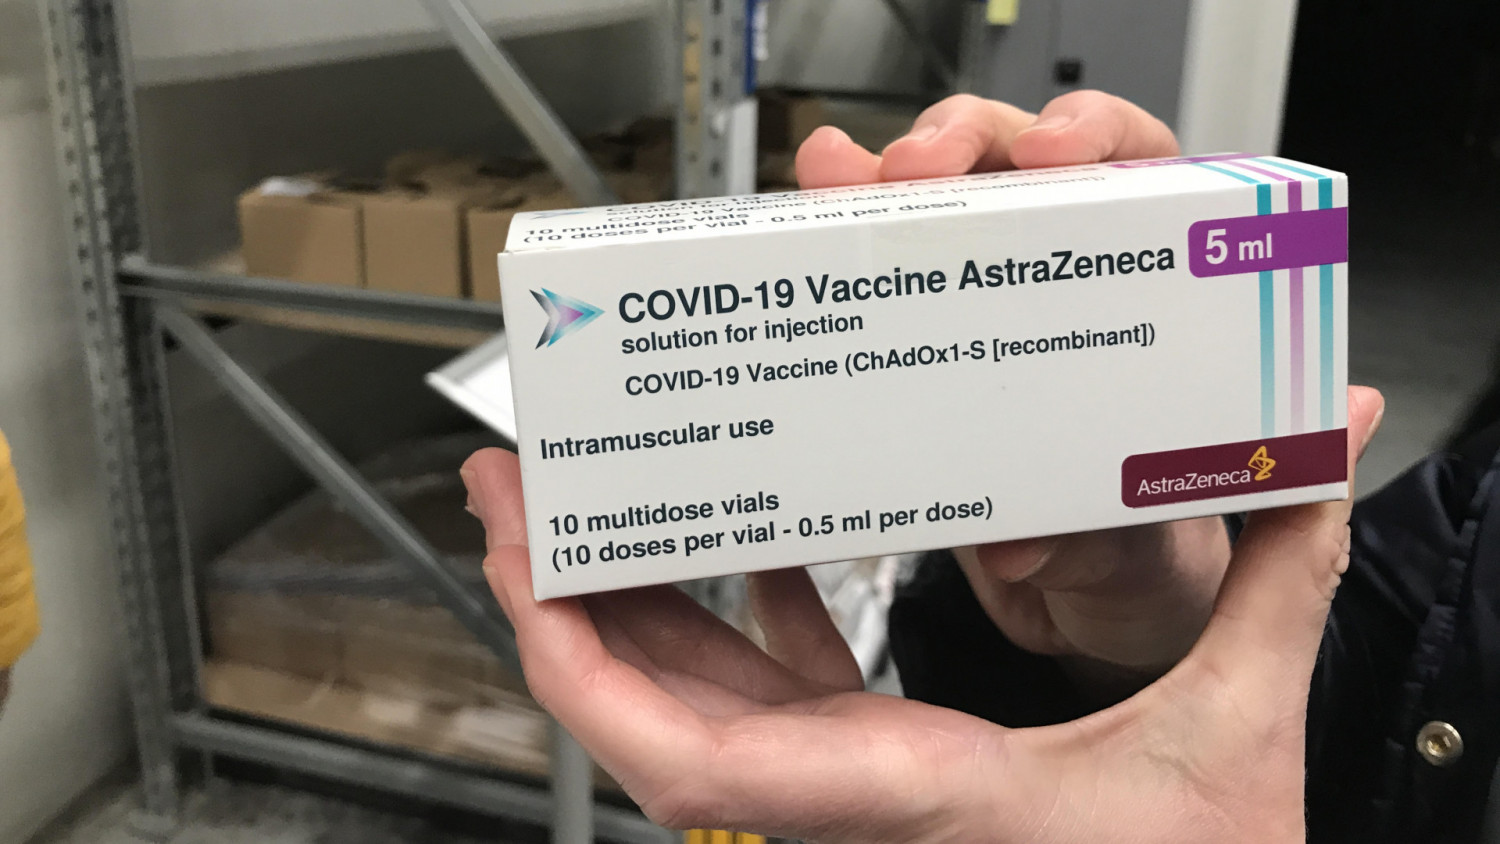 Vaccine của hãng AstraZeneca đang bị nghi ngại ở nhiều nước là có thể tạo nên tác dụng phụ nguy hiểm - Ảnh: portfolio.hu